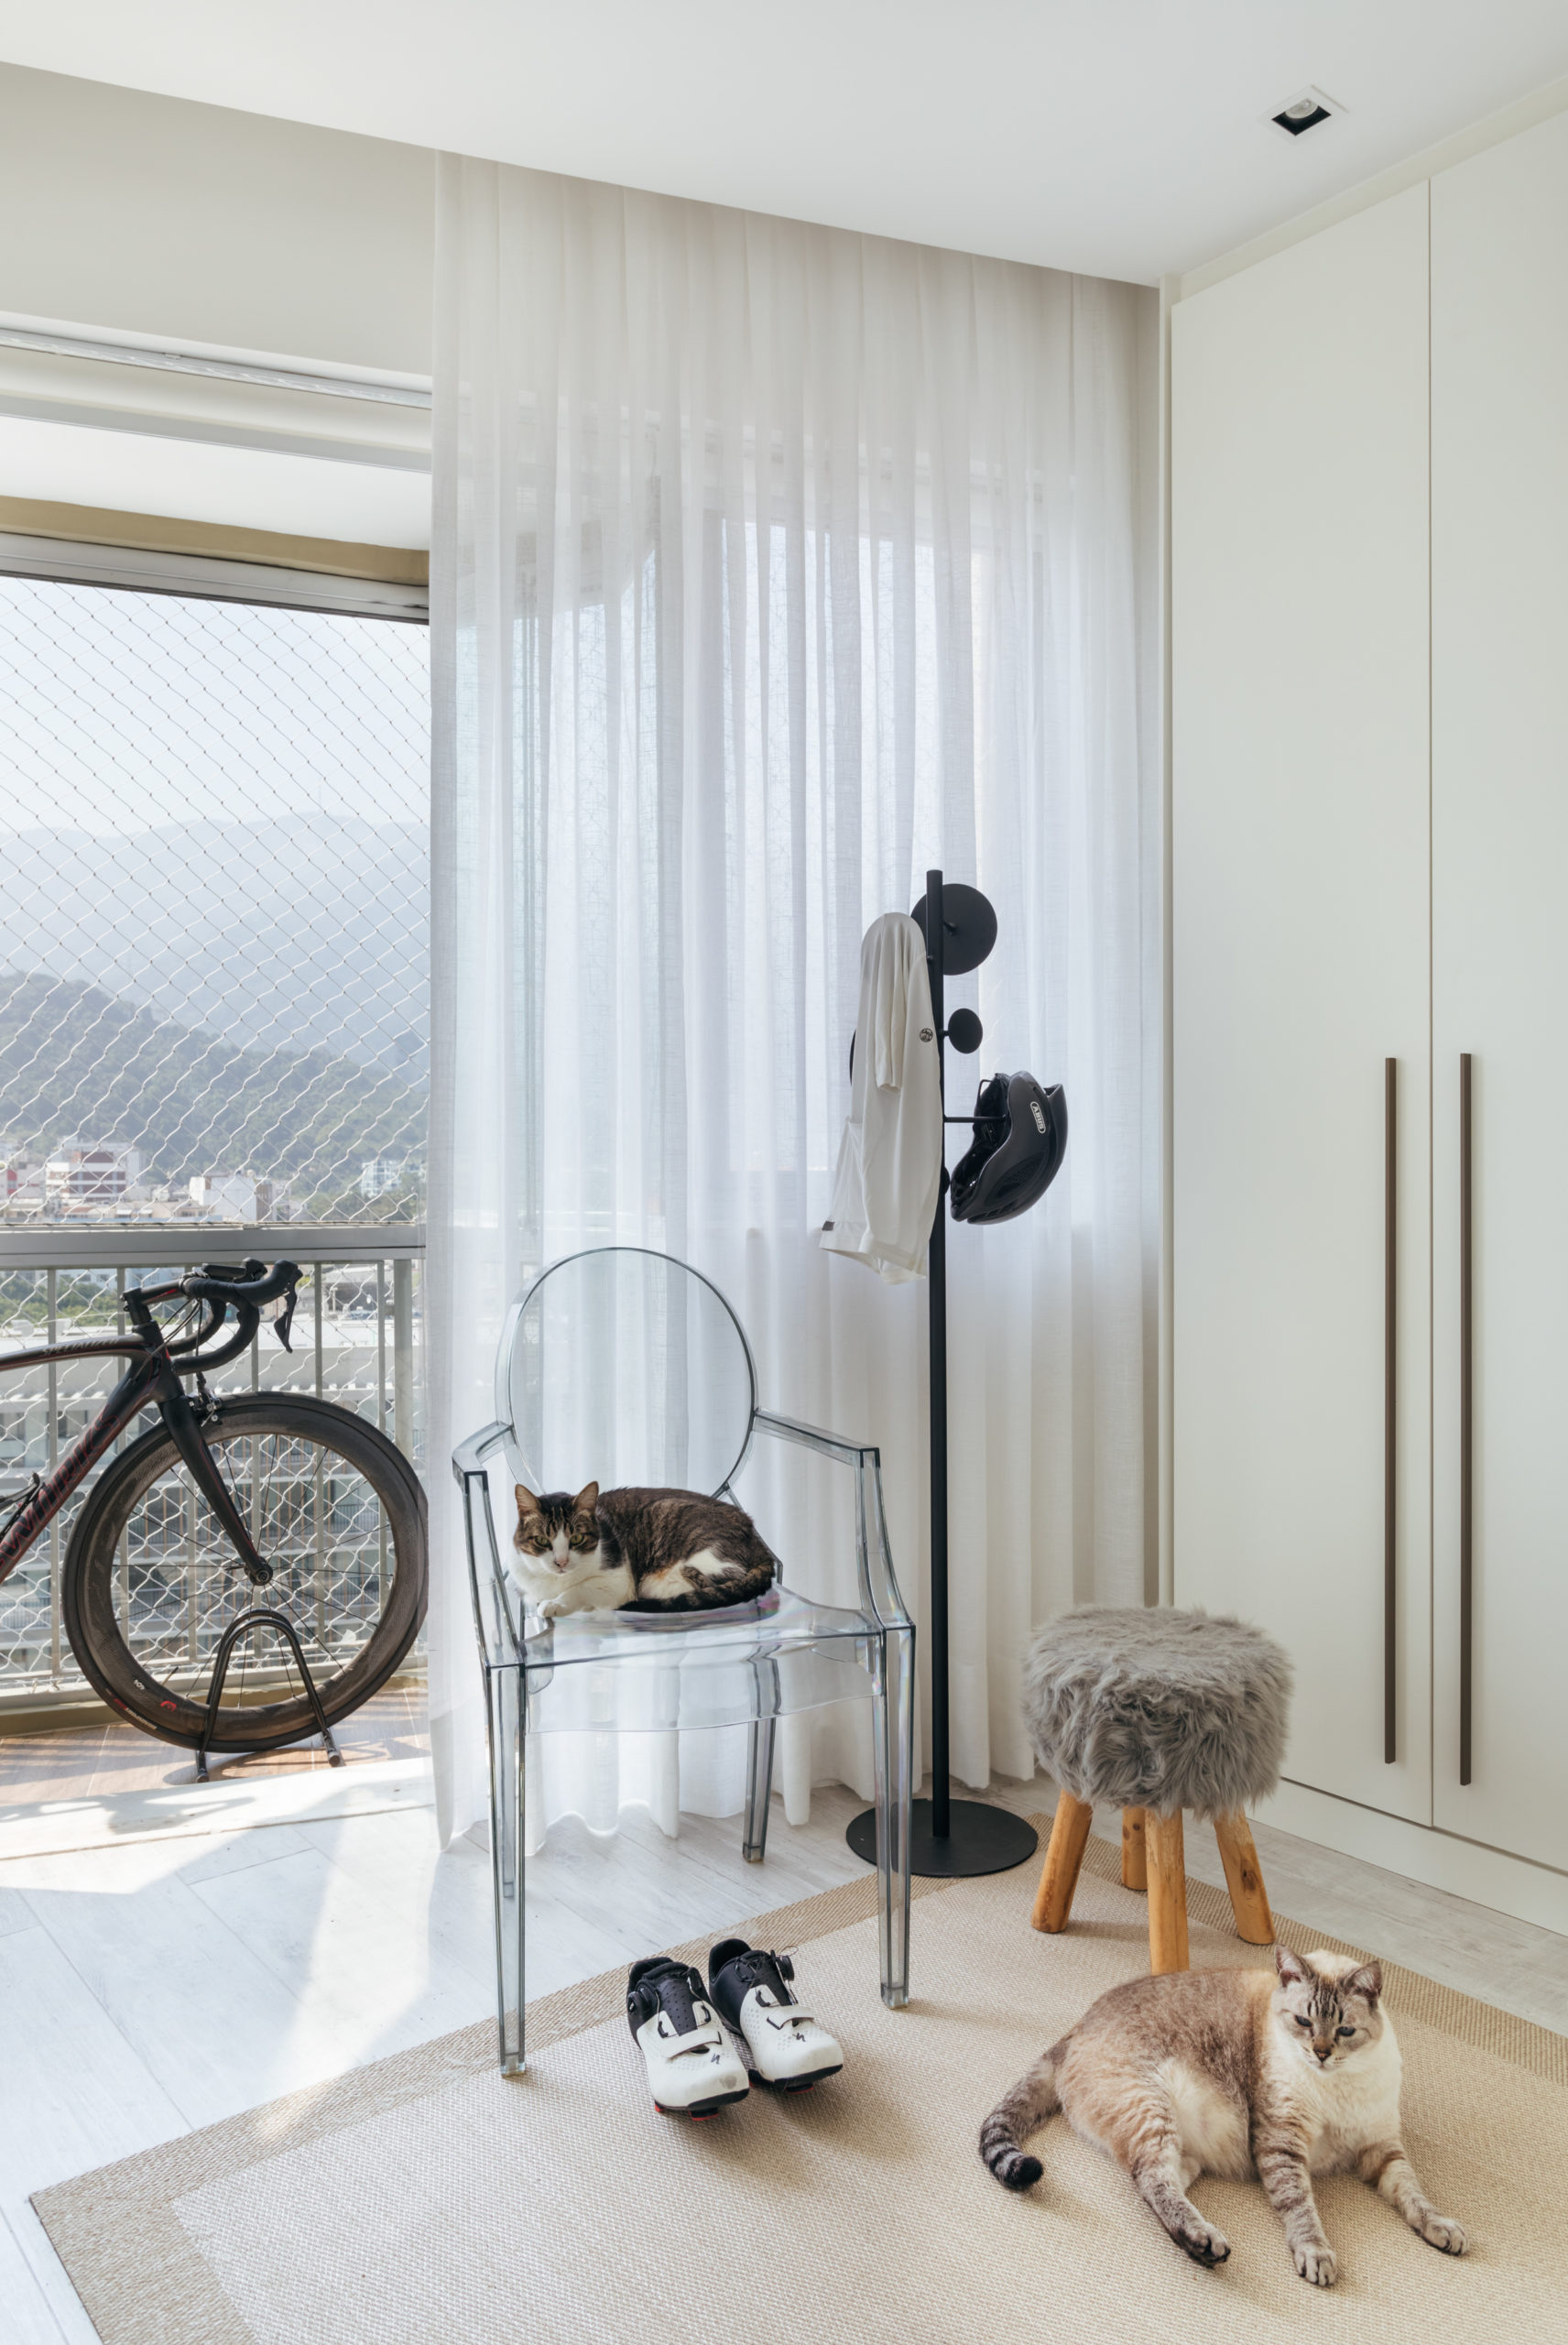 Releitura contemporânea do estilo escandinavo e orçamento enxuto guiam o projeto deste apartamento de 84m2 no Lebon (RJ), assinado pelo arquiteto Nilton Montarroyos.